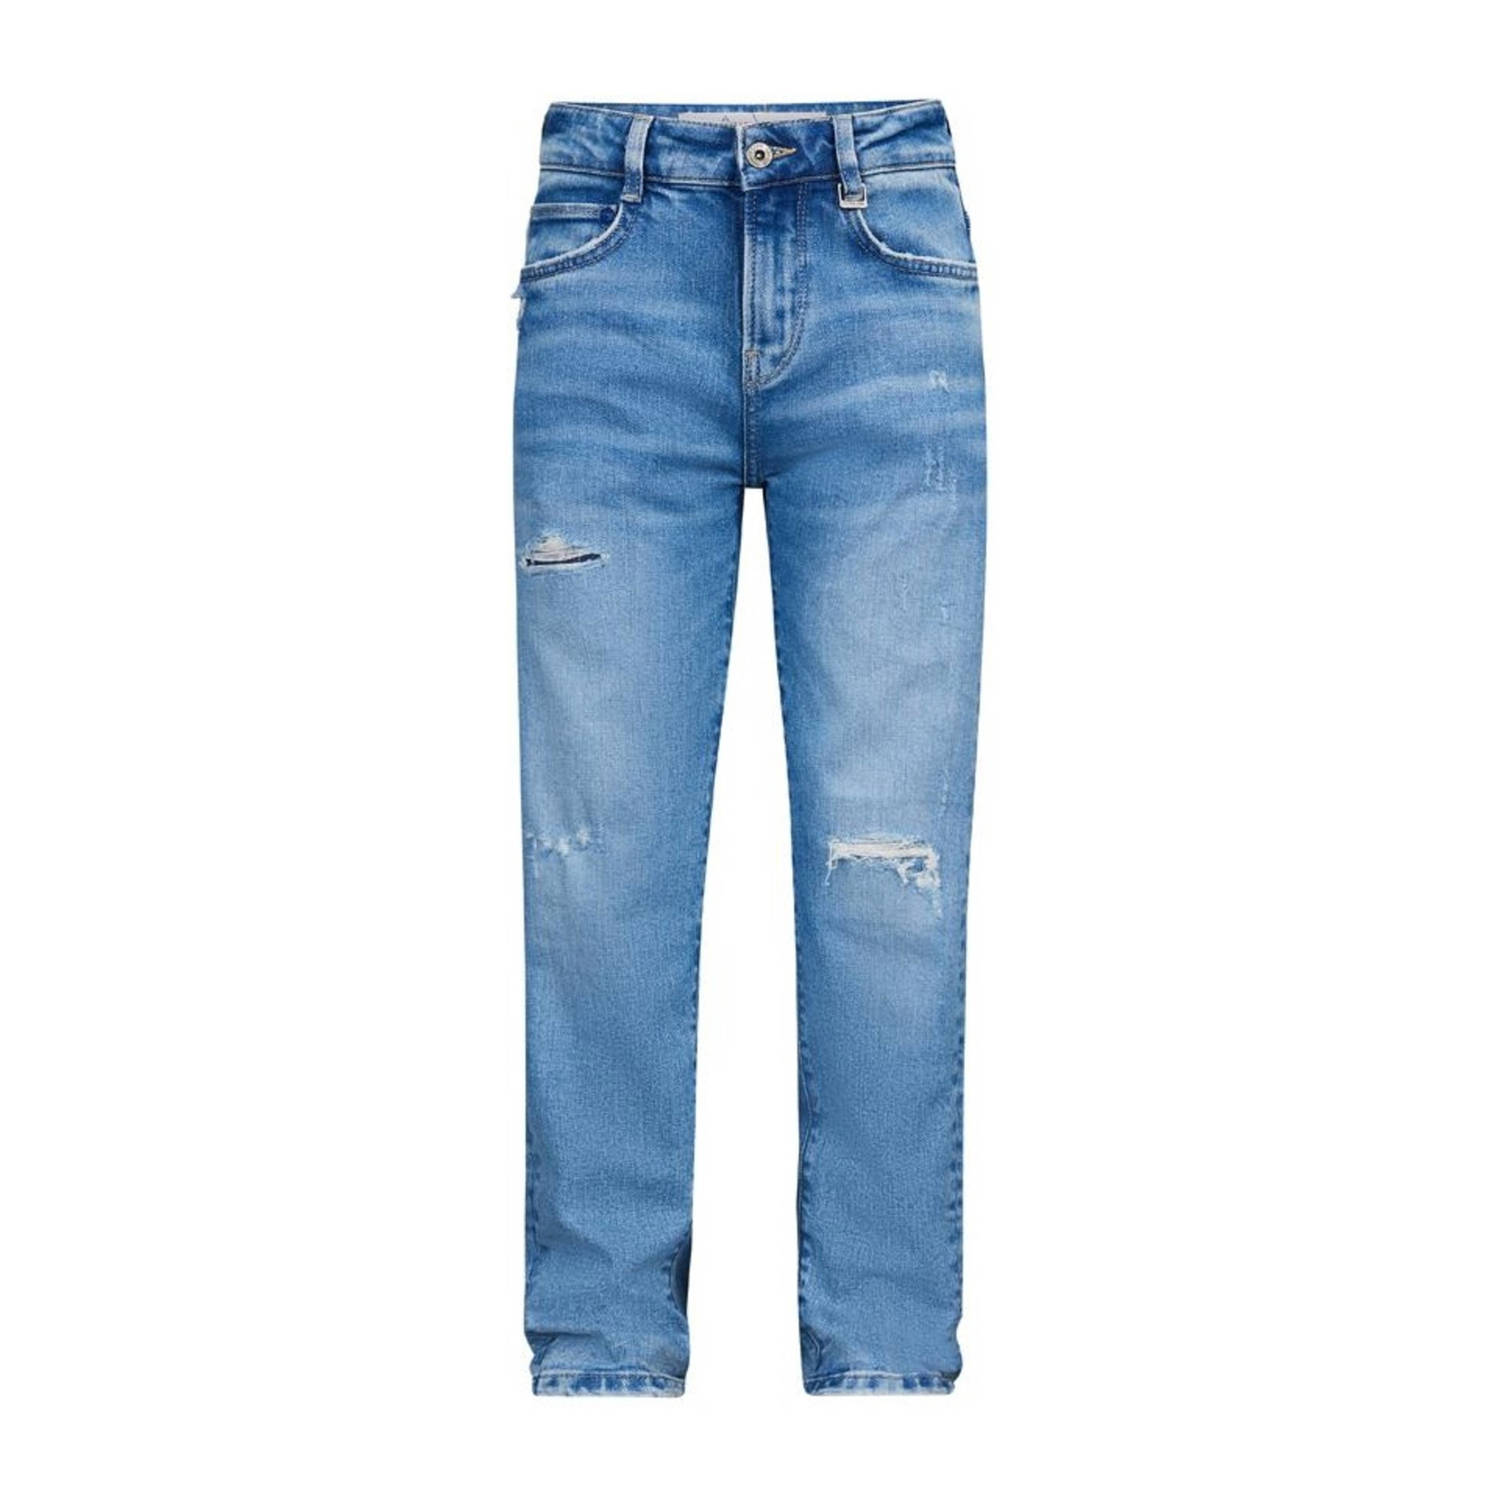 Retour Jeans loose fit jeans Landon Vintage light blue denim Blauw Jongens Stretchdenim 122